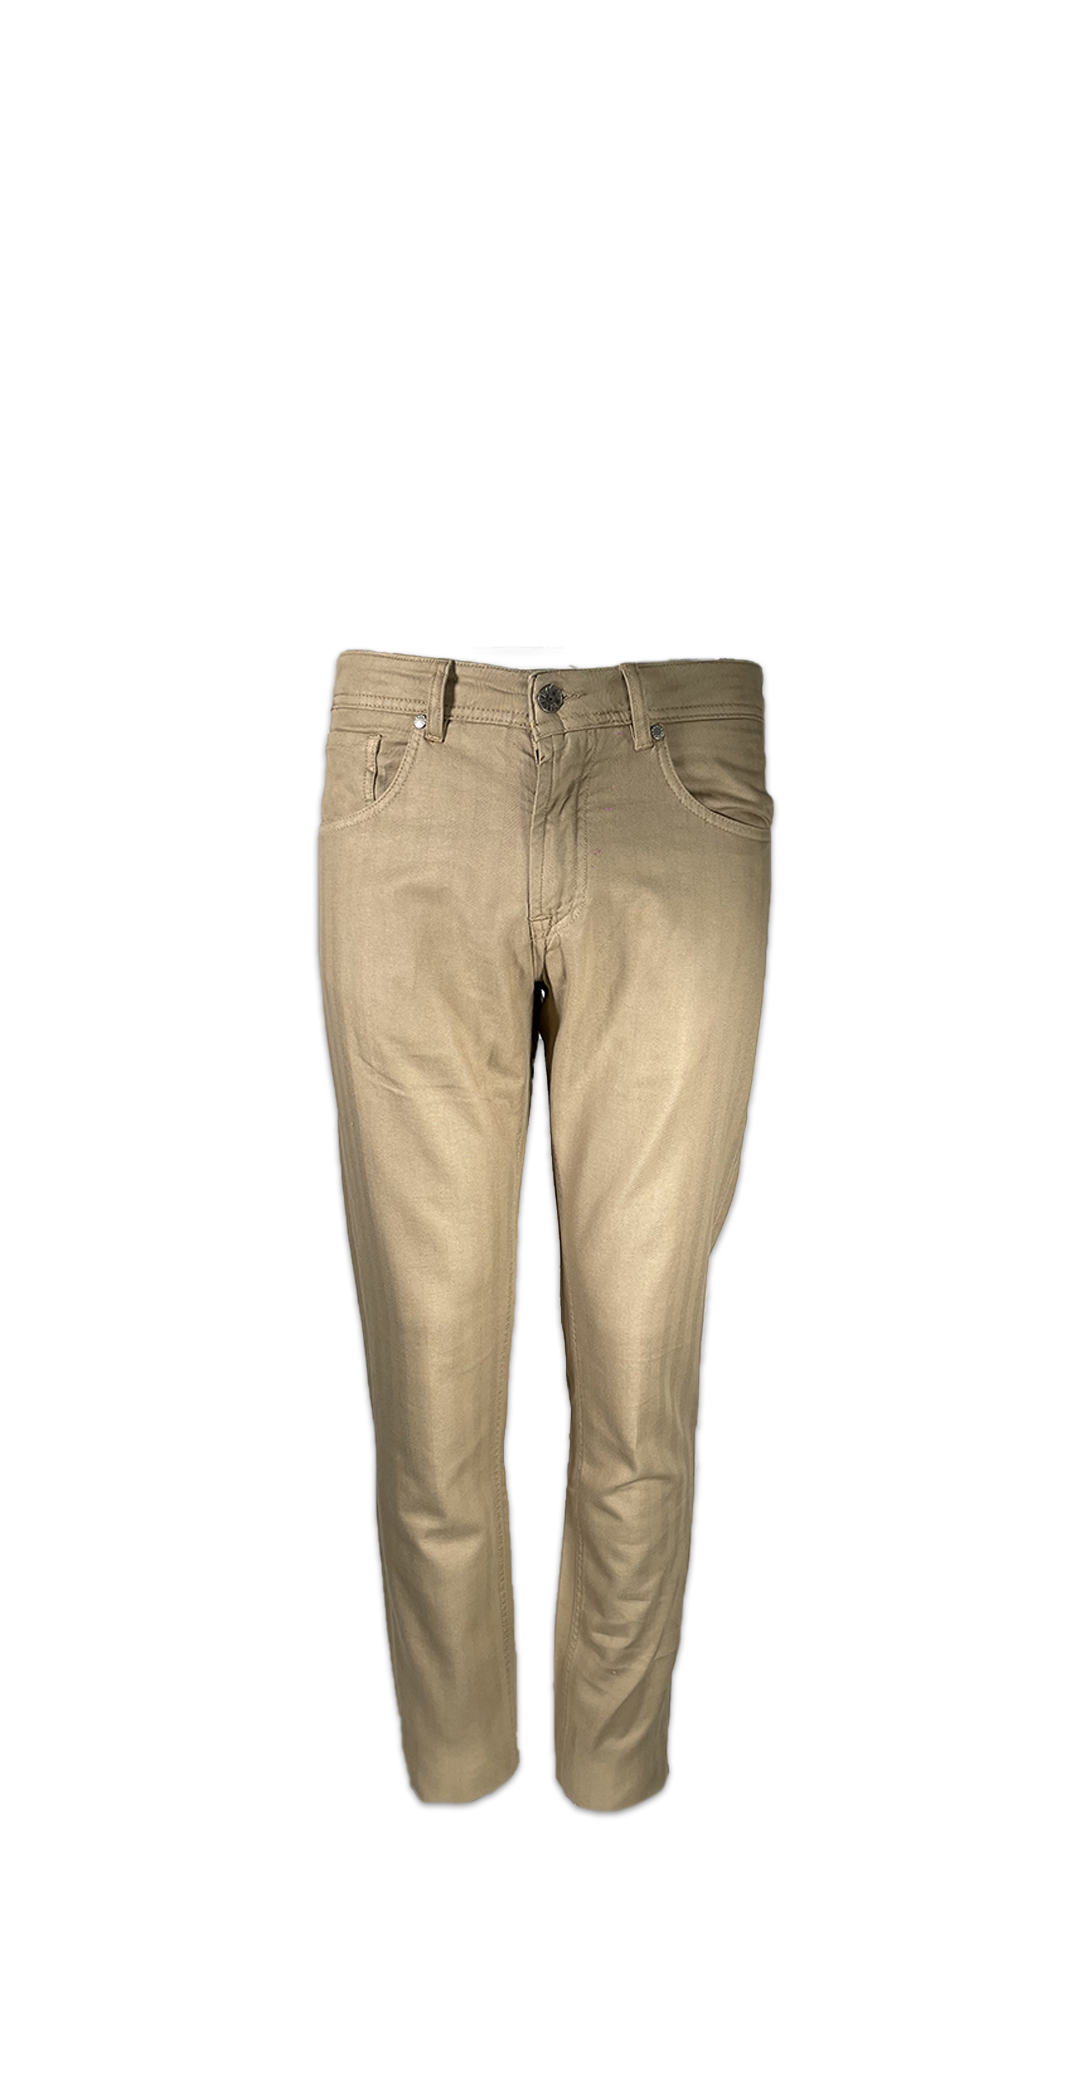 OUR FLAY Pantalone con microlavorazione colore su colore